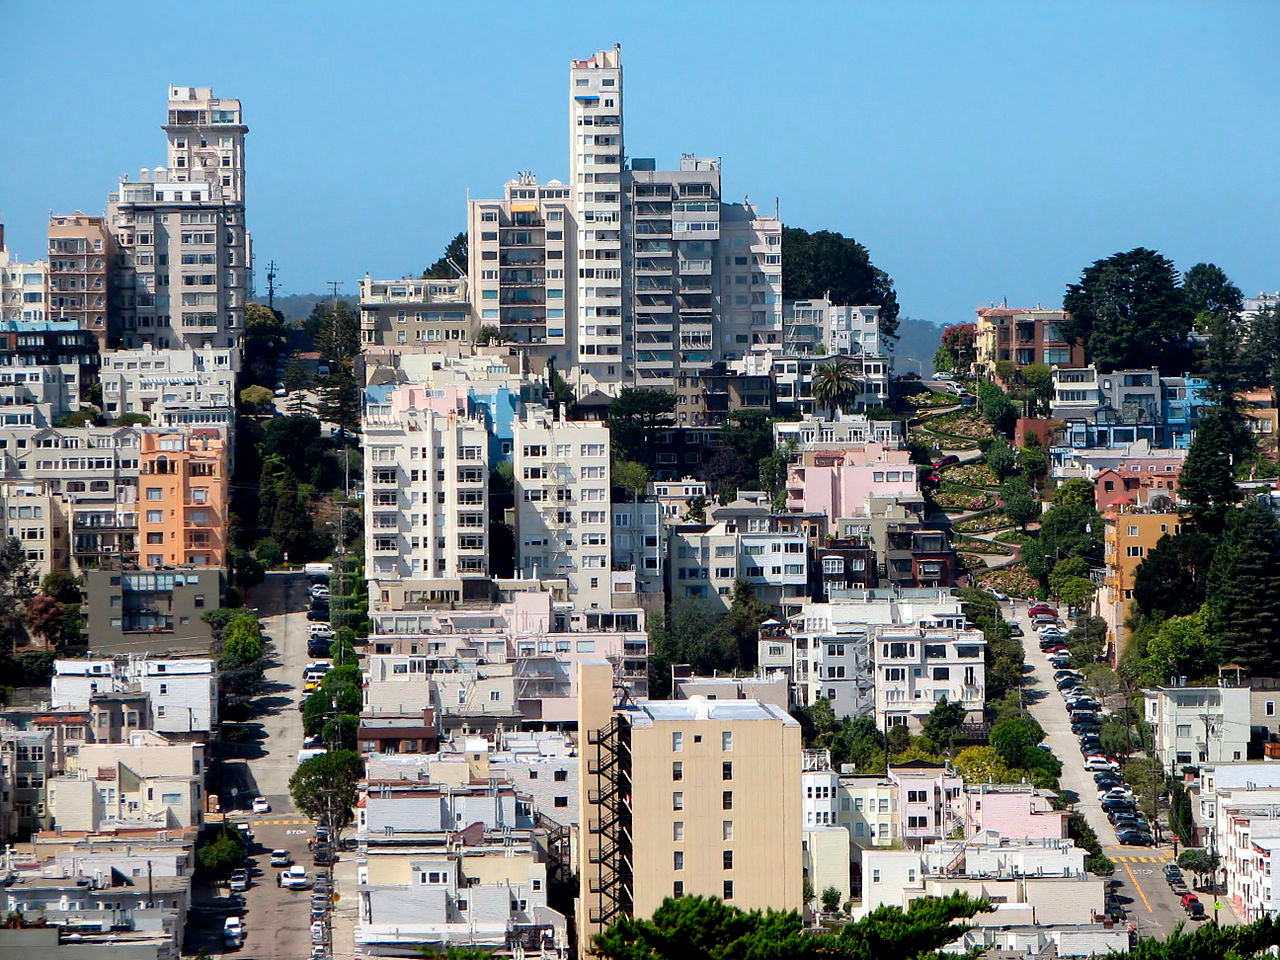 Russian Hill, район в Сан-Франциско.